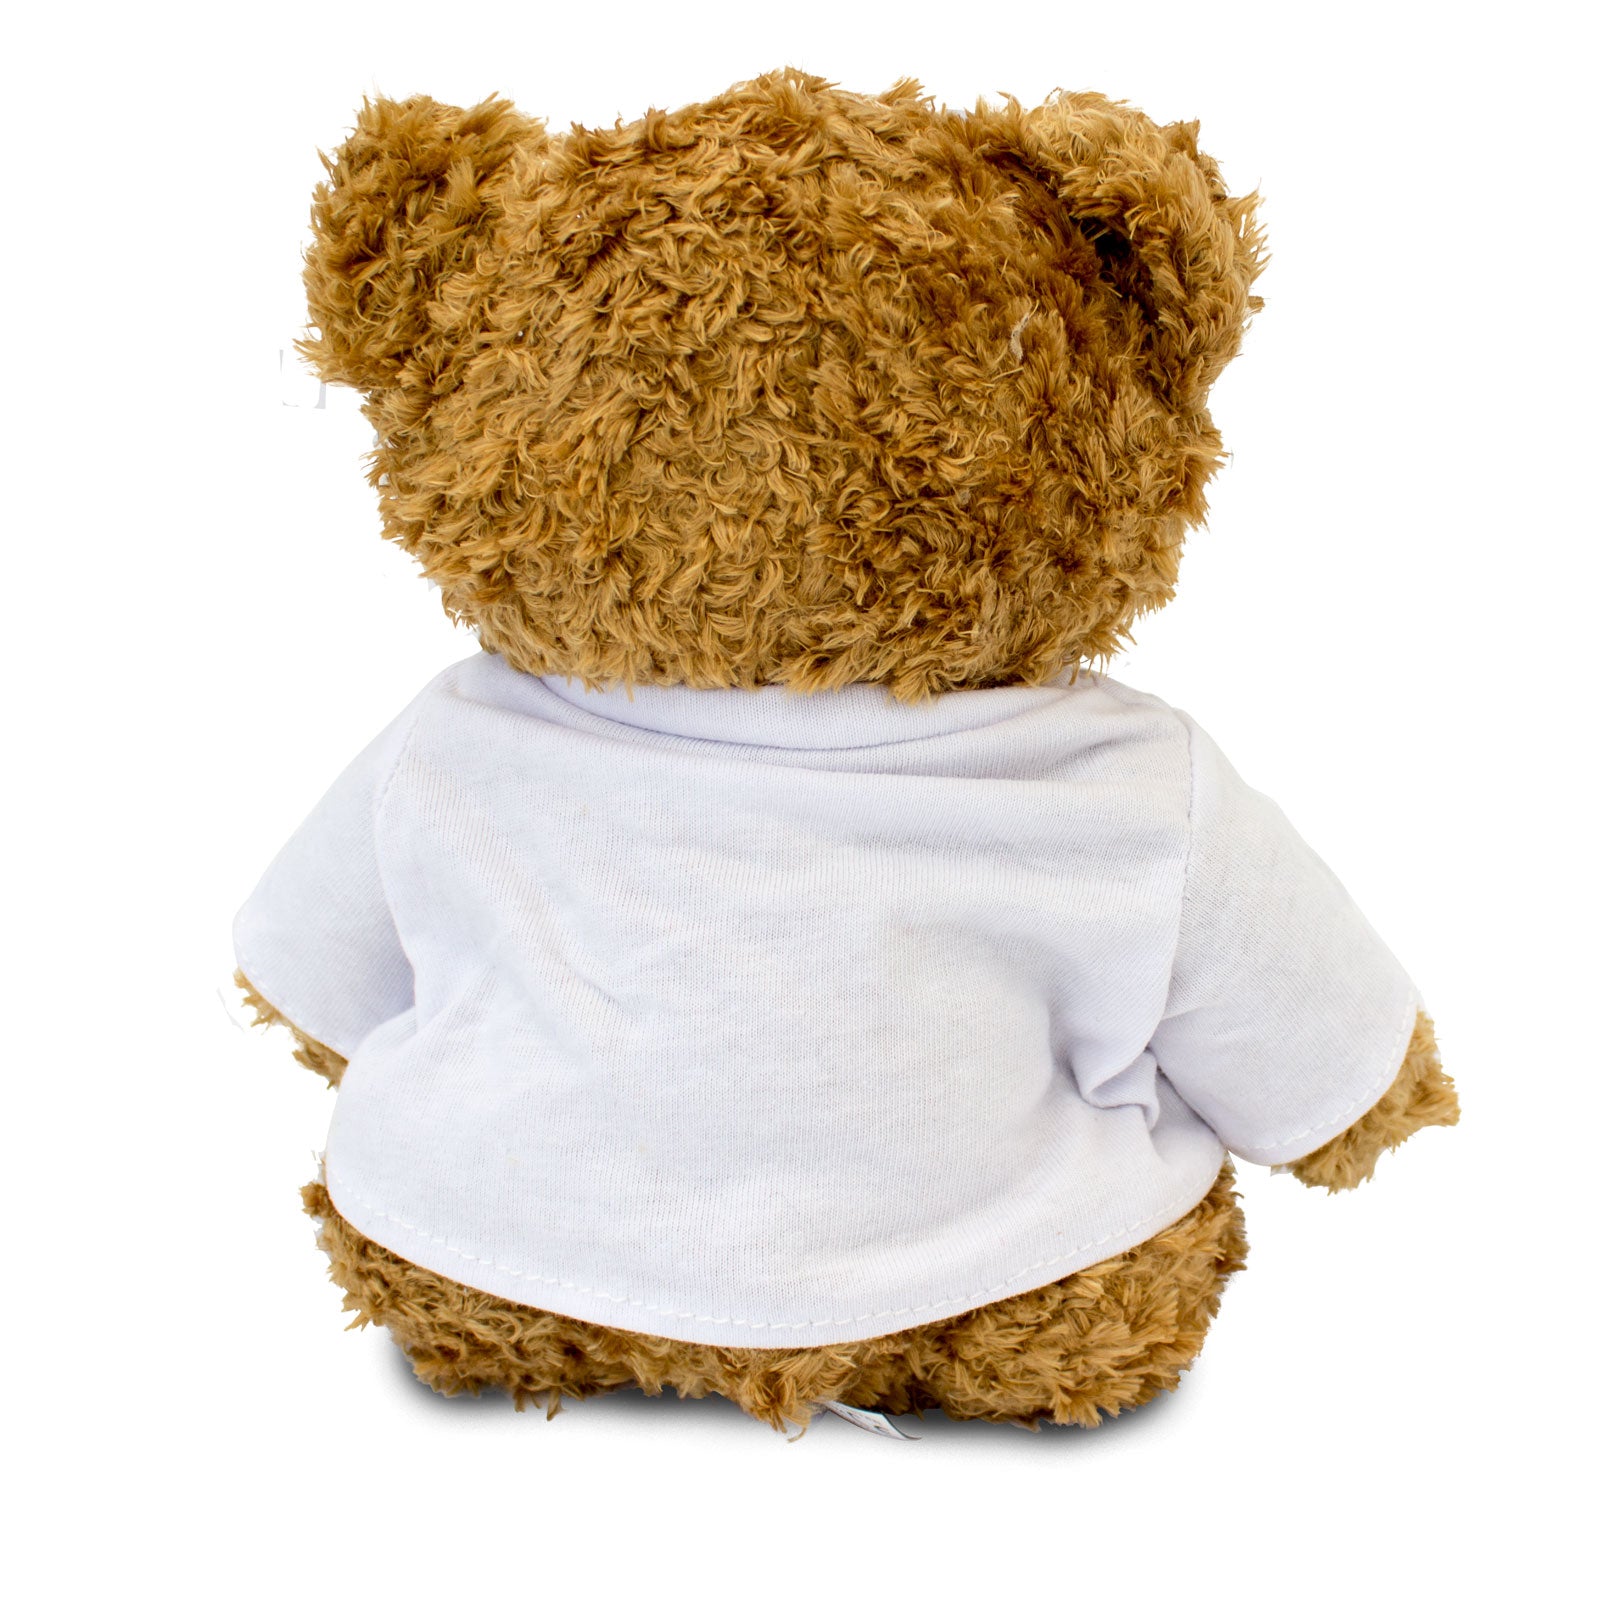 Get Well Soon Apostolos - Teddy Bear